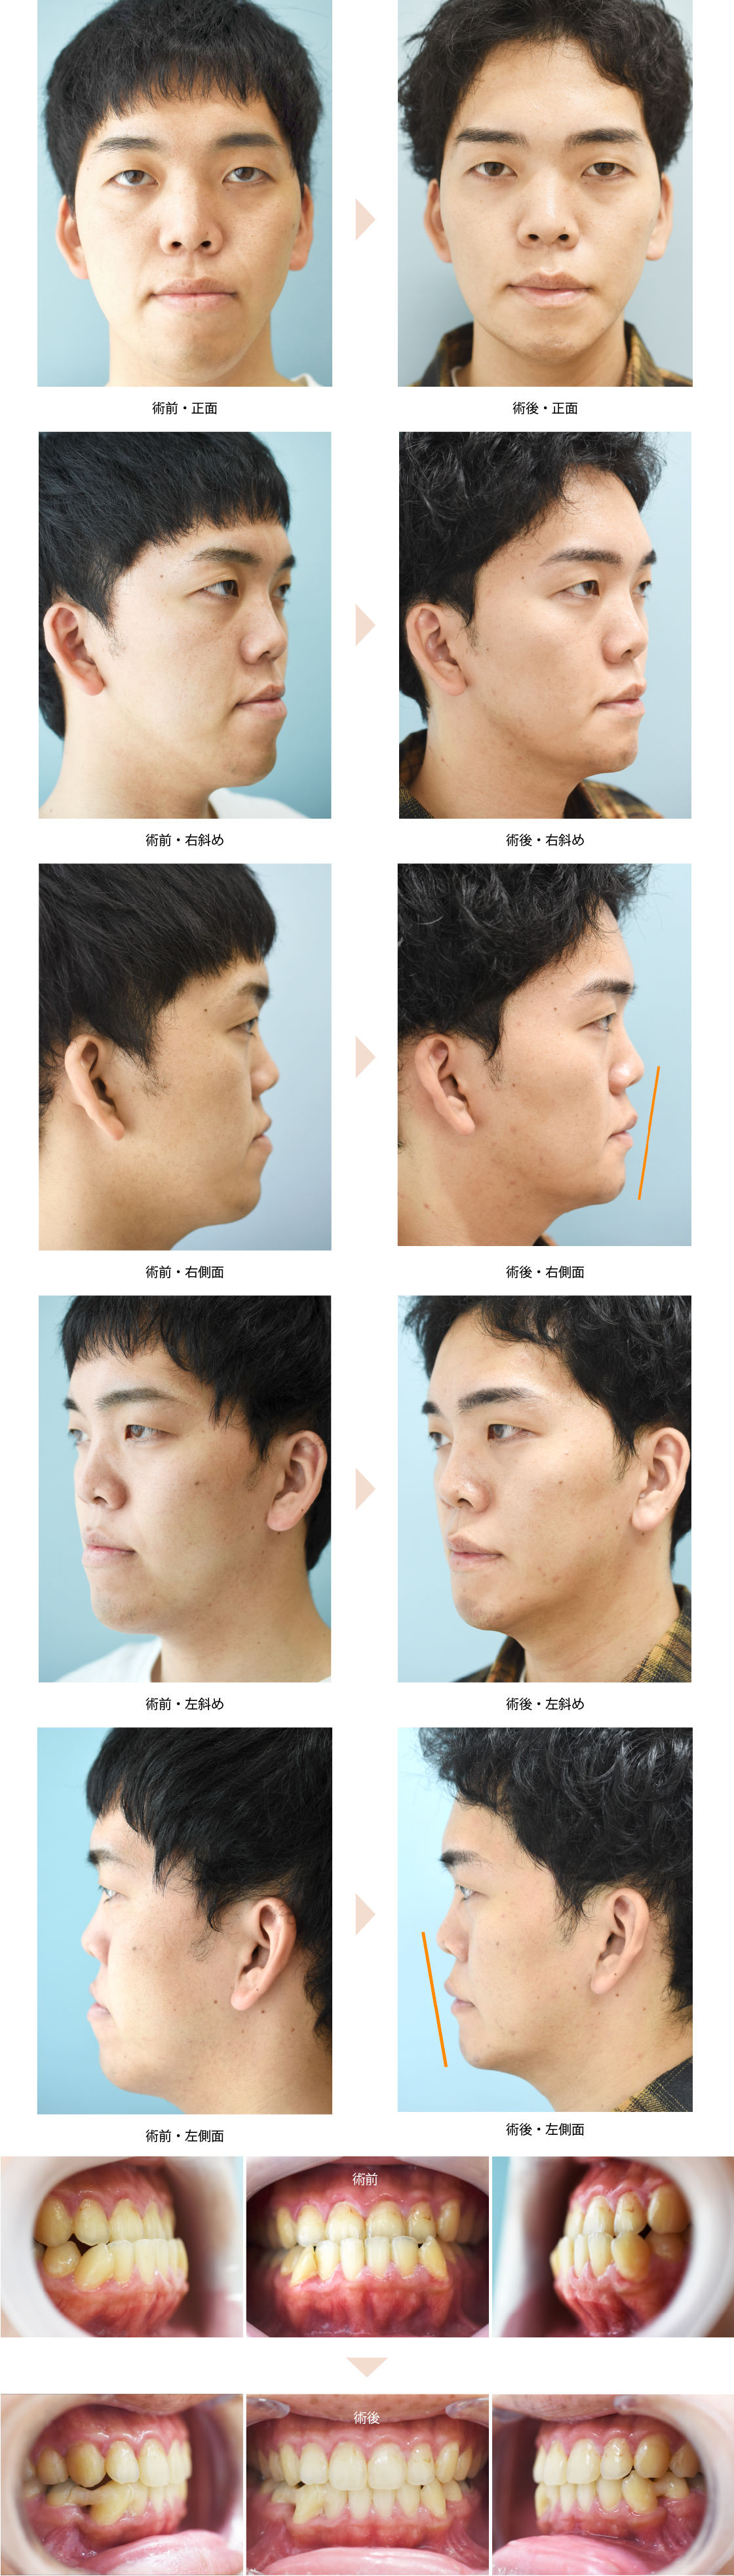 「下顎セットバック＋オトガイ形成（受け口・顎の長さ改善）」の症例写真・ビフォーアフター